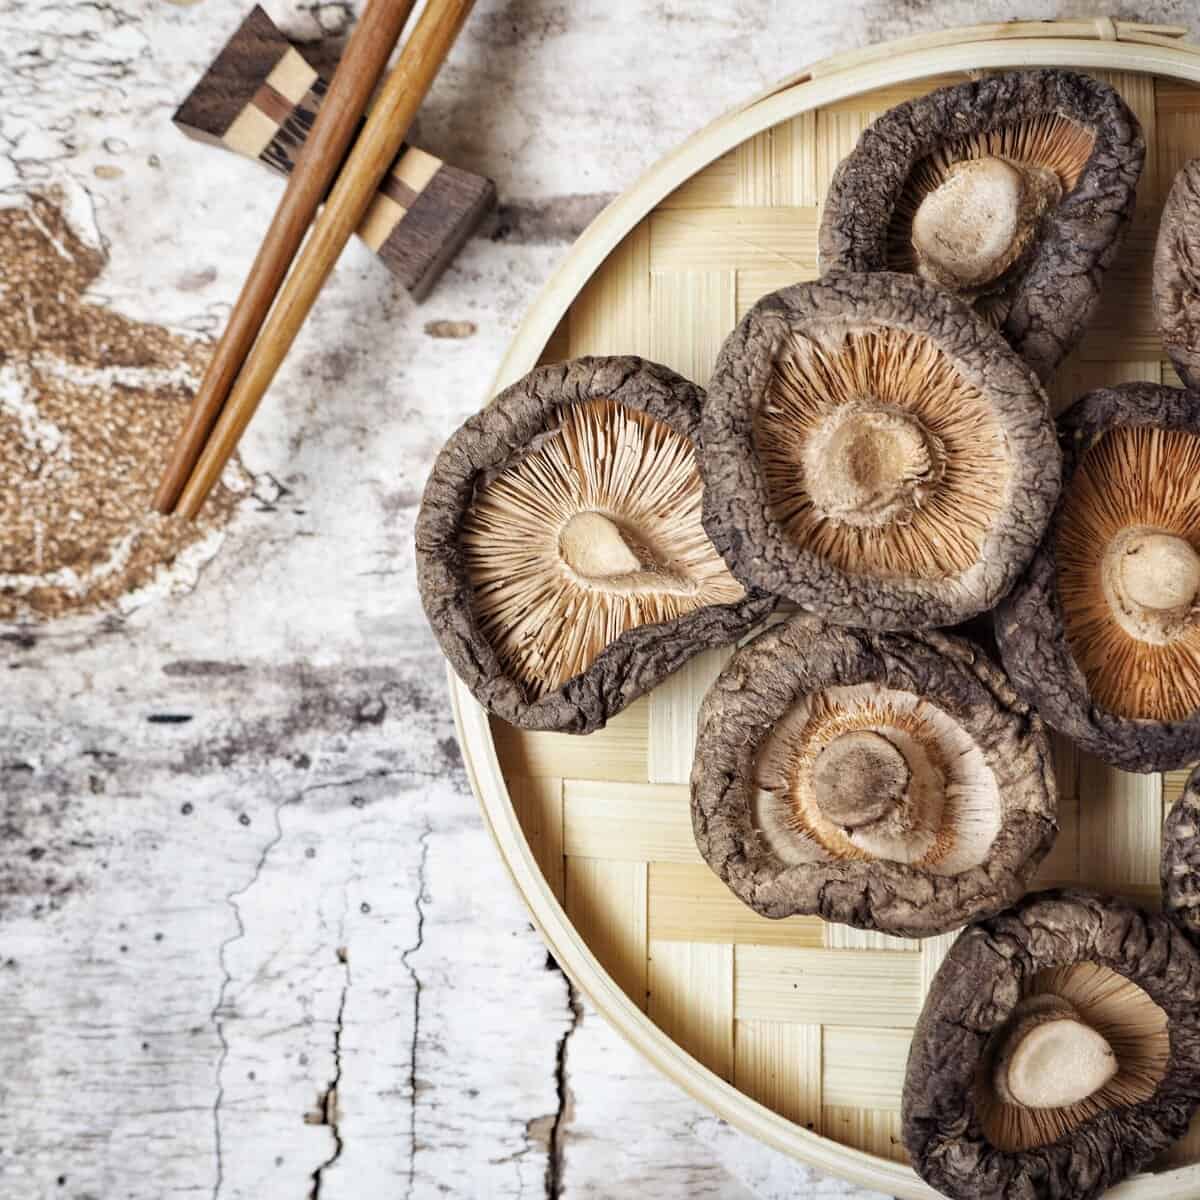 What are shiitake mushrooms